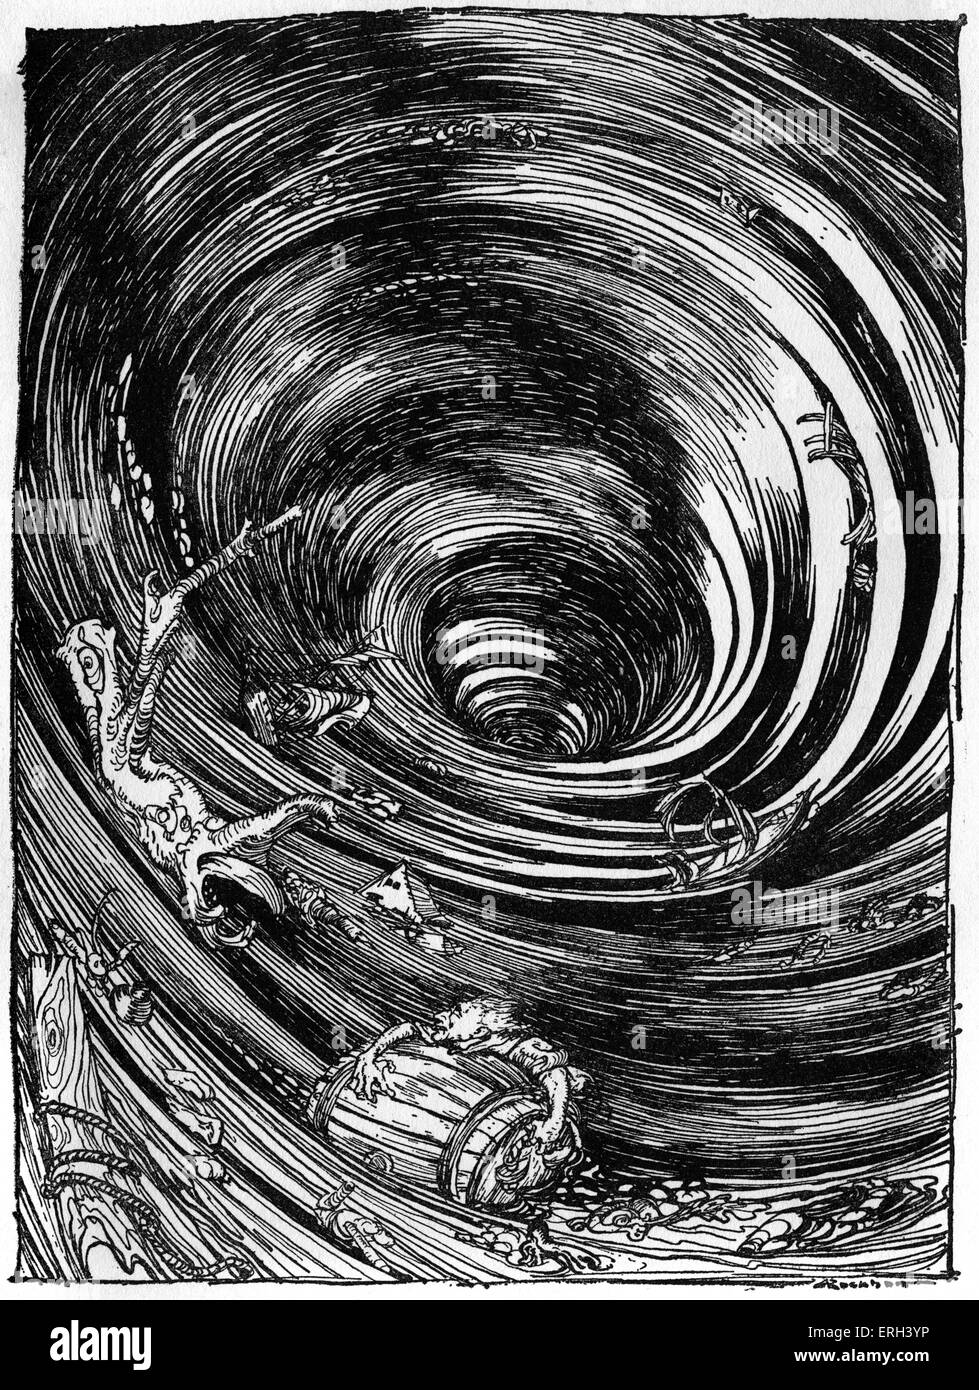 Un descenso en la vorágine' de Edgar Allan Poe. Ilustración de Arthur Rackham (1867 - 1939). EAP autor americano y poeta: 19 de enero de 1809 - 7 de octubre de 1849. Foto de stock